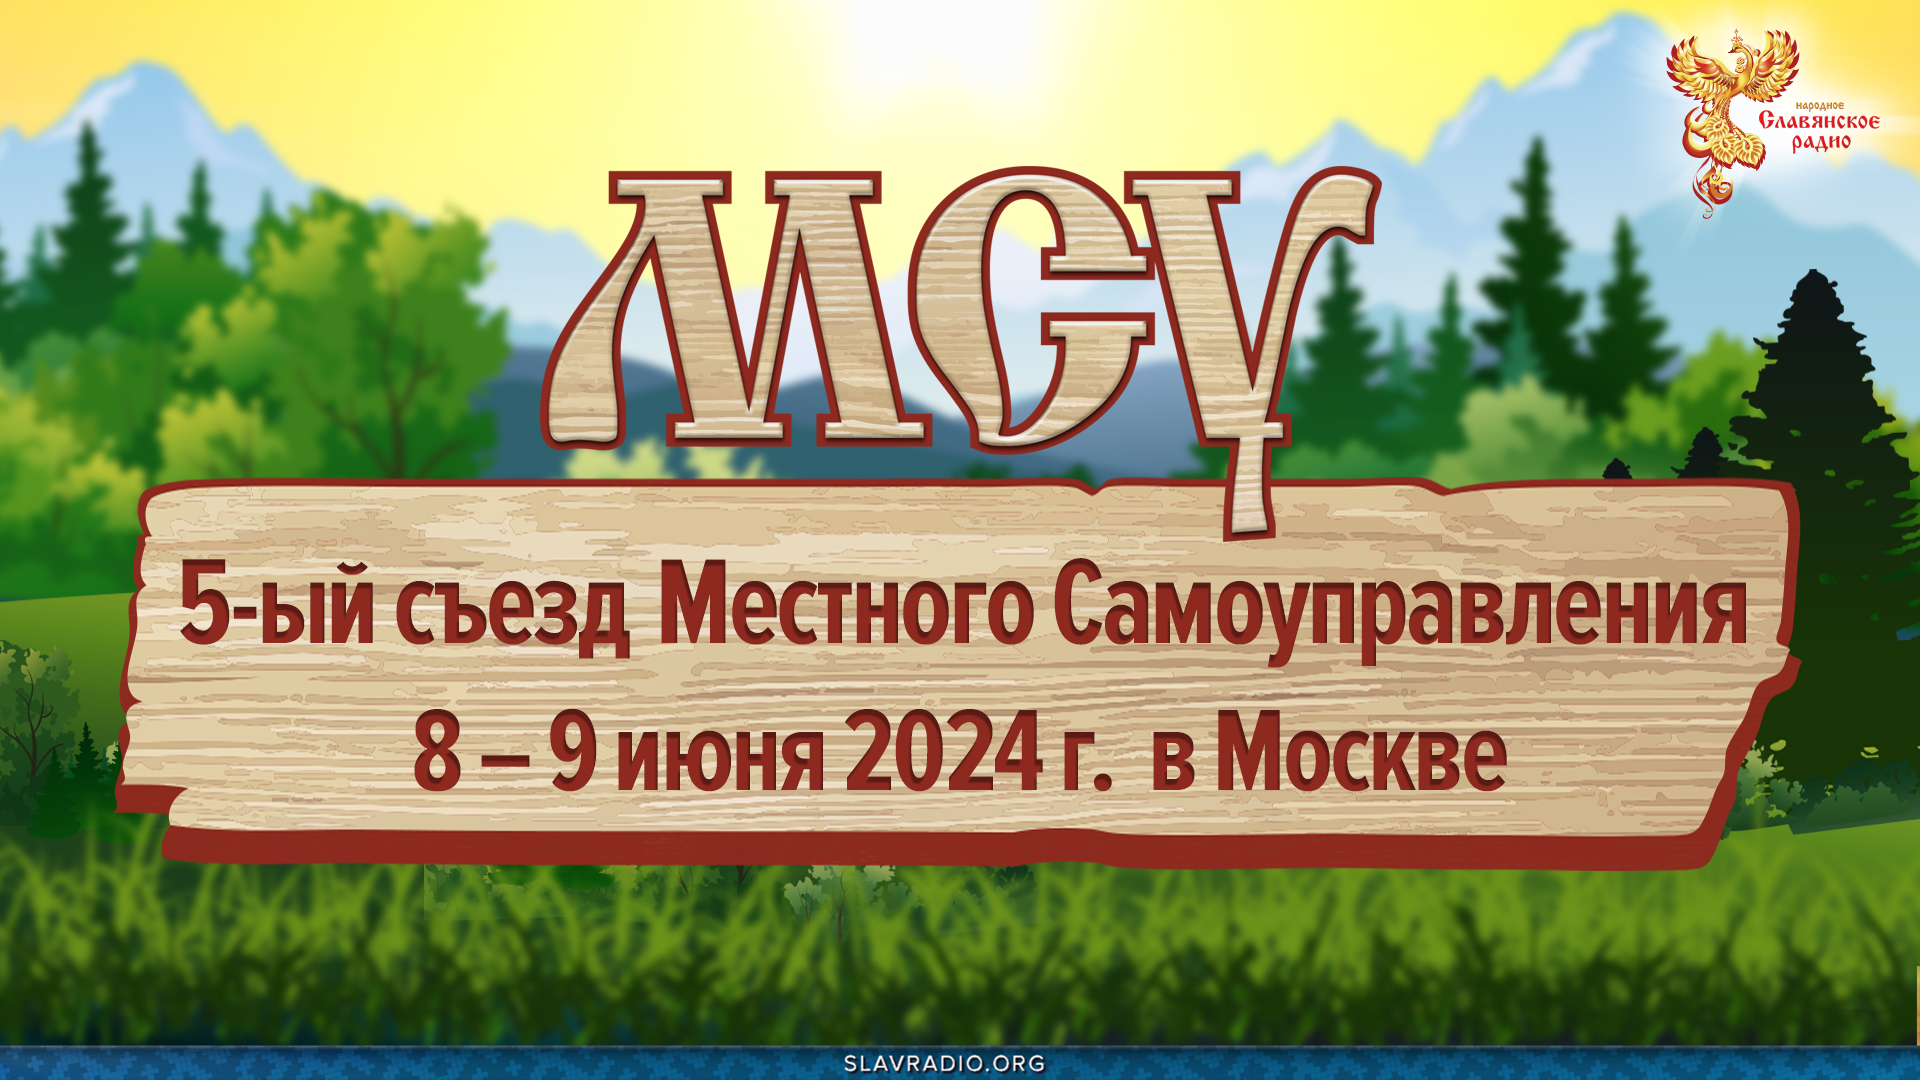 Первый день 5-го съезда МСУ (Местное Самоуправление) 8 июня 2024 года в Москве.